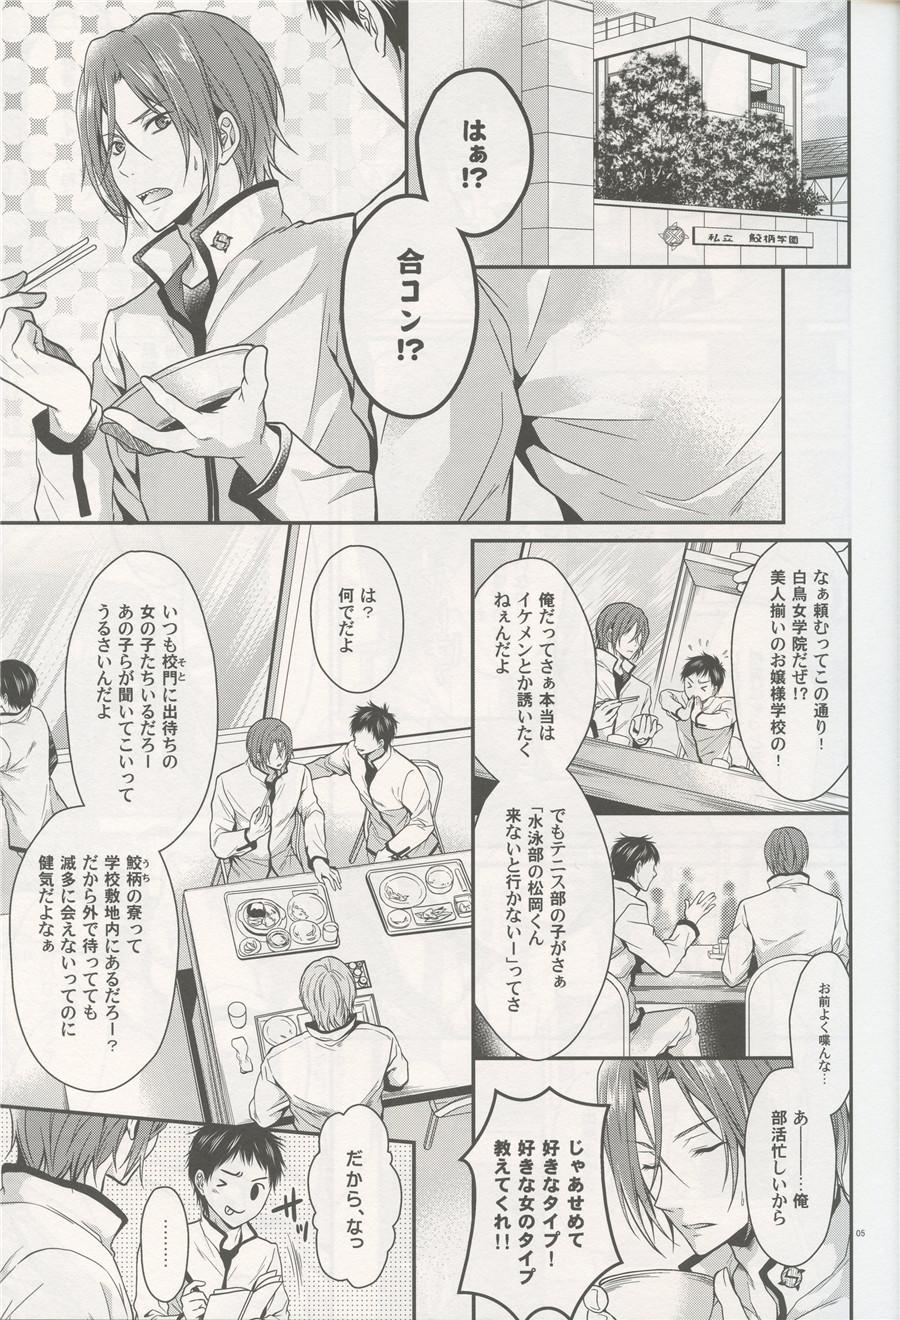 Sucking Aitsu no Yome Skill ga Takasugirundaga. - Free Horny Sluts - Page 4